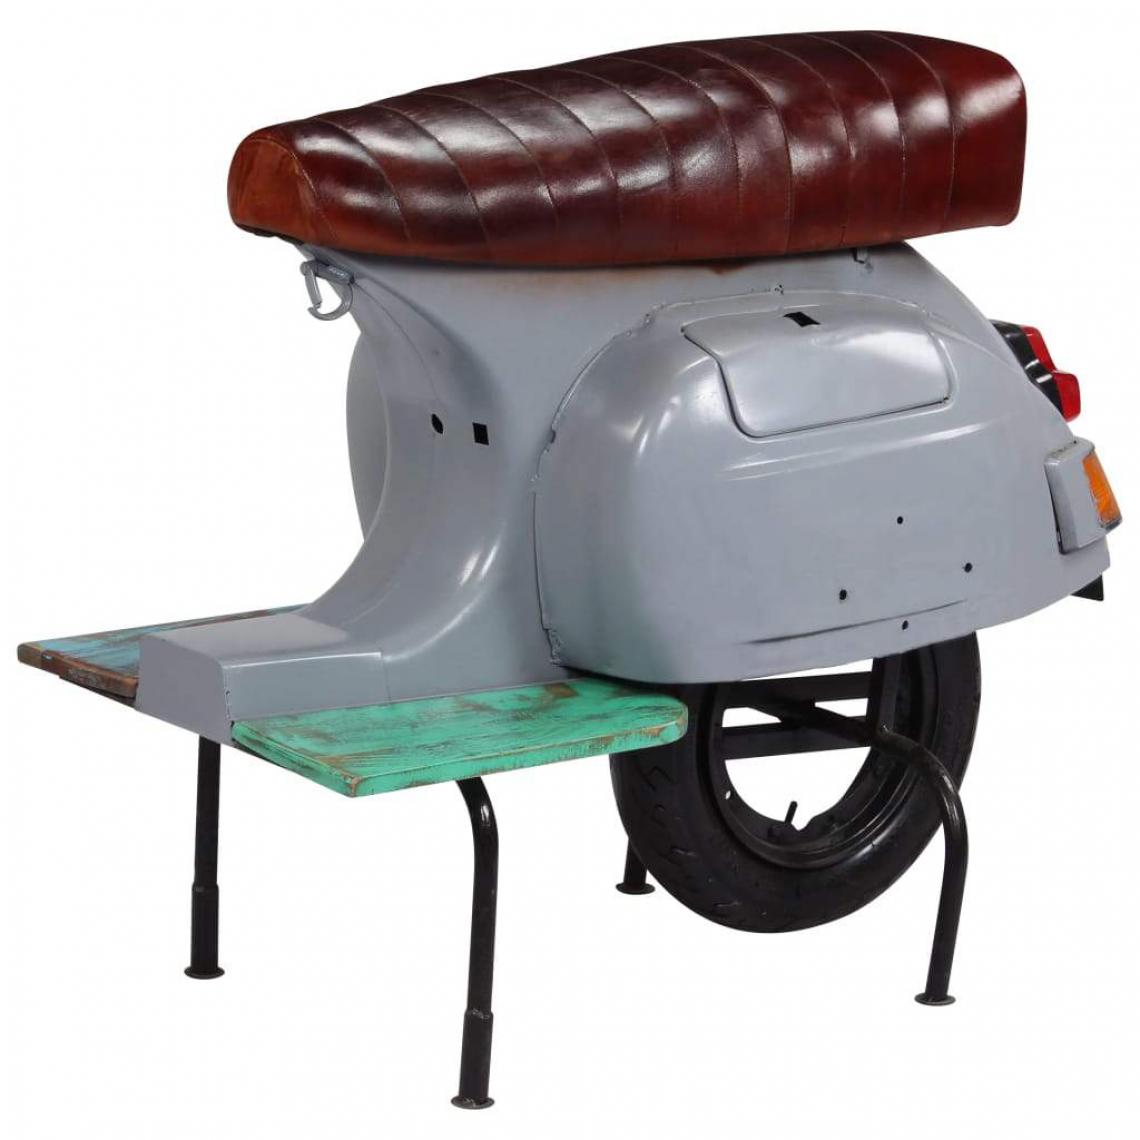 Helloshop26 - Tabouret de bar design chaise siège scooter cuir véritable et bois recyclé gris 1202146 - Tabourets